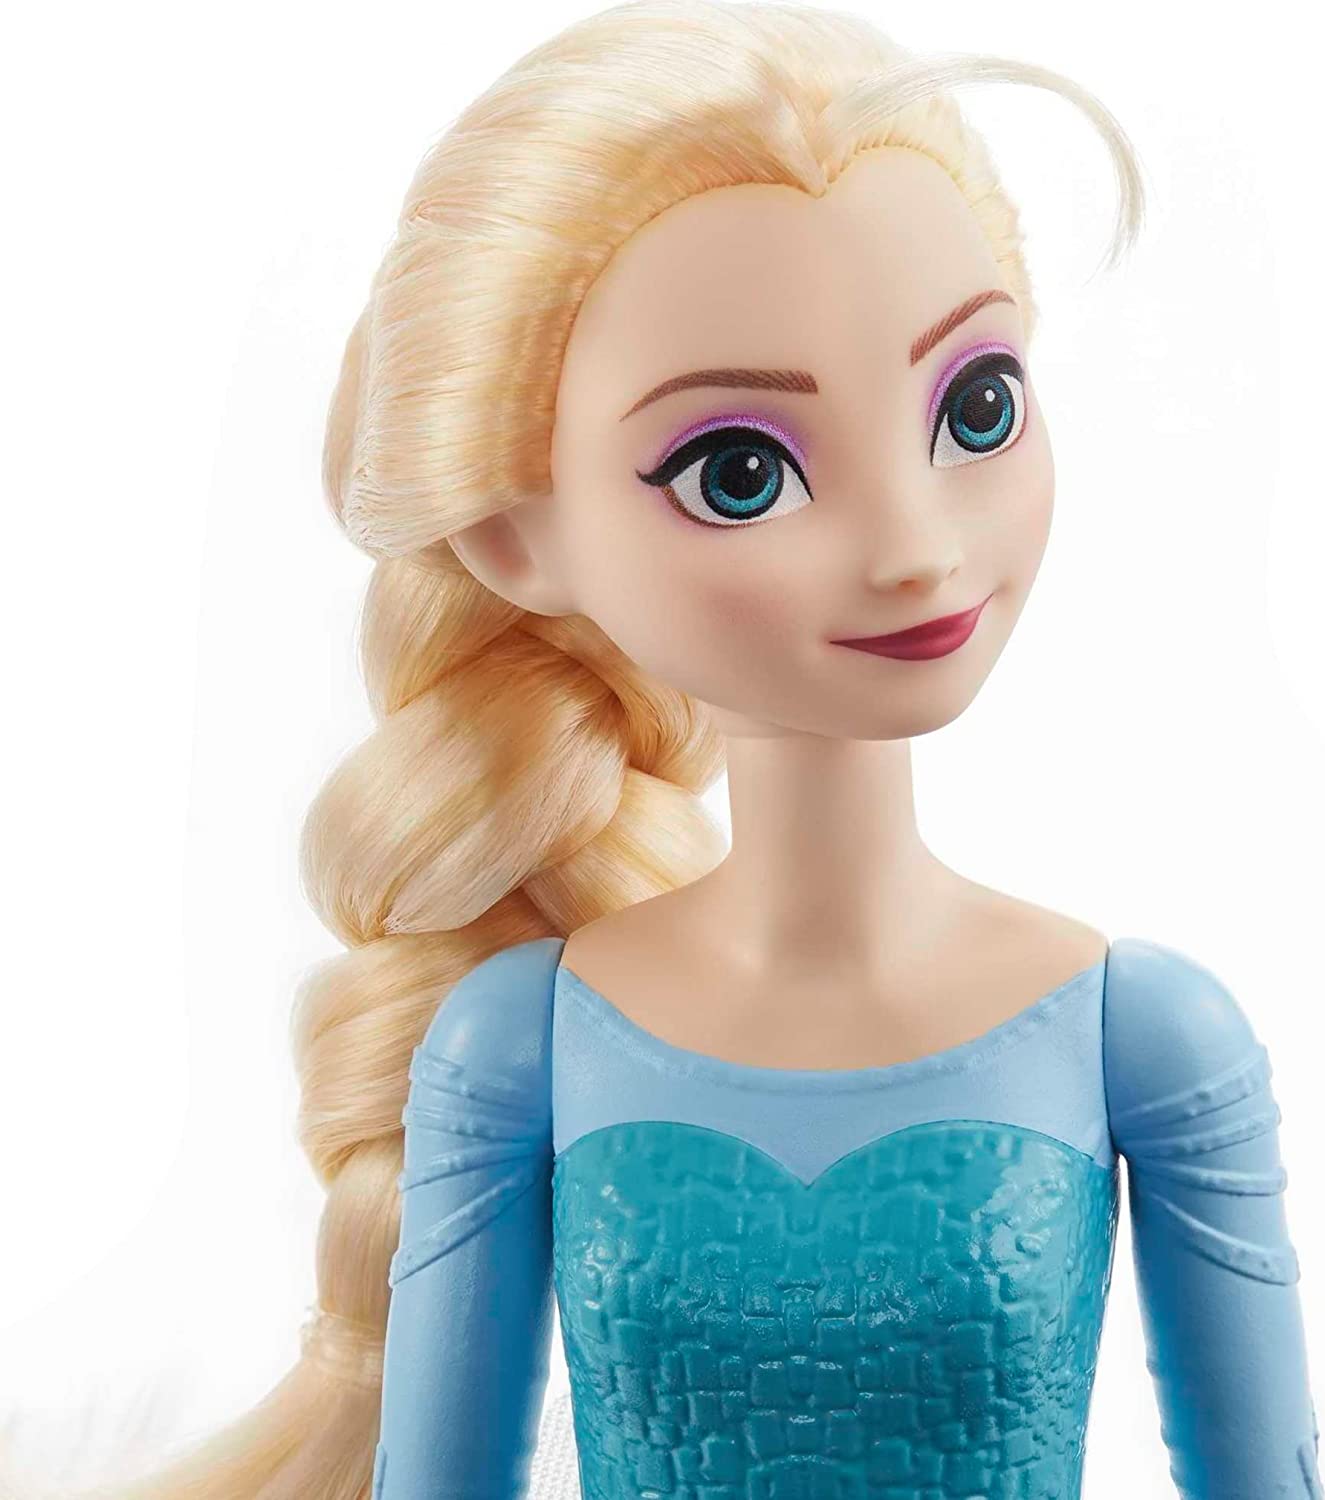 Disney Frozen - Boneca Elsa HMJ41